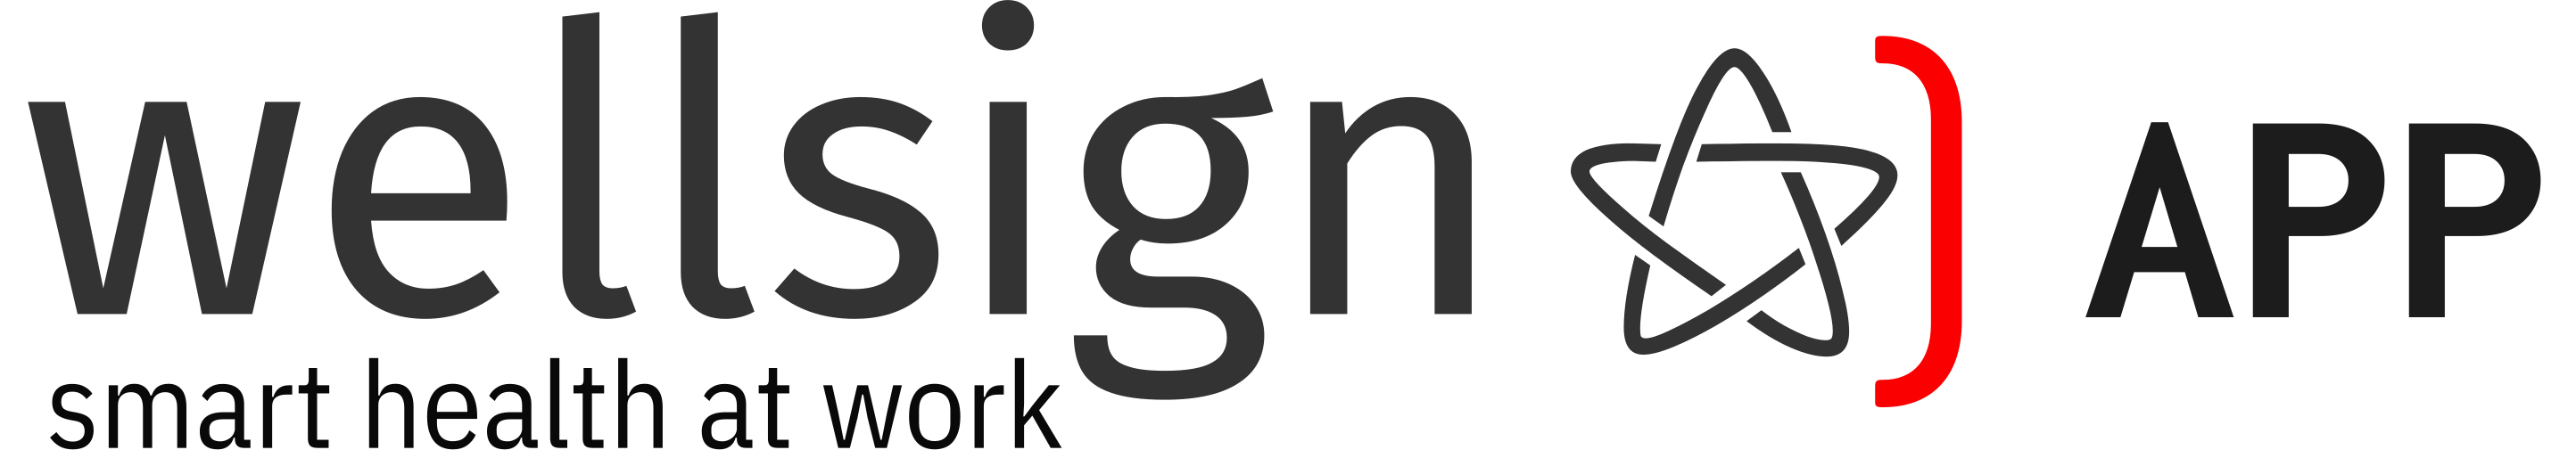 Wellsign Logo